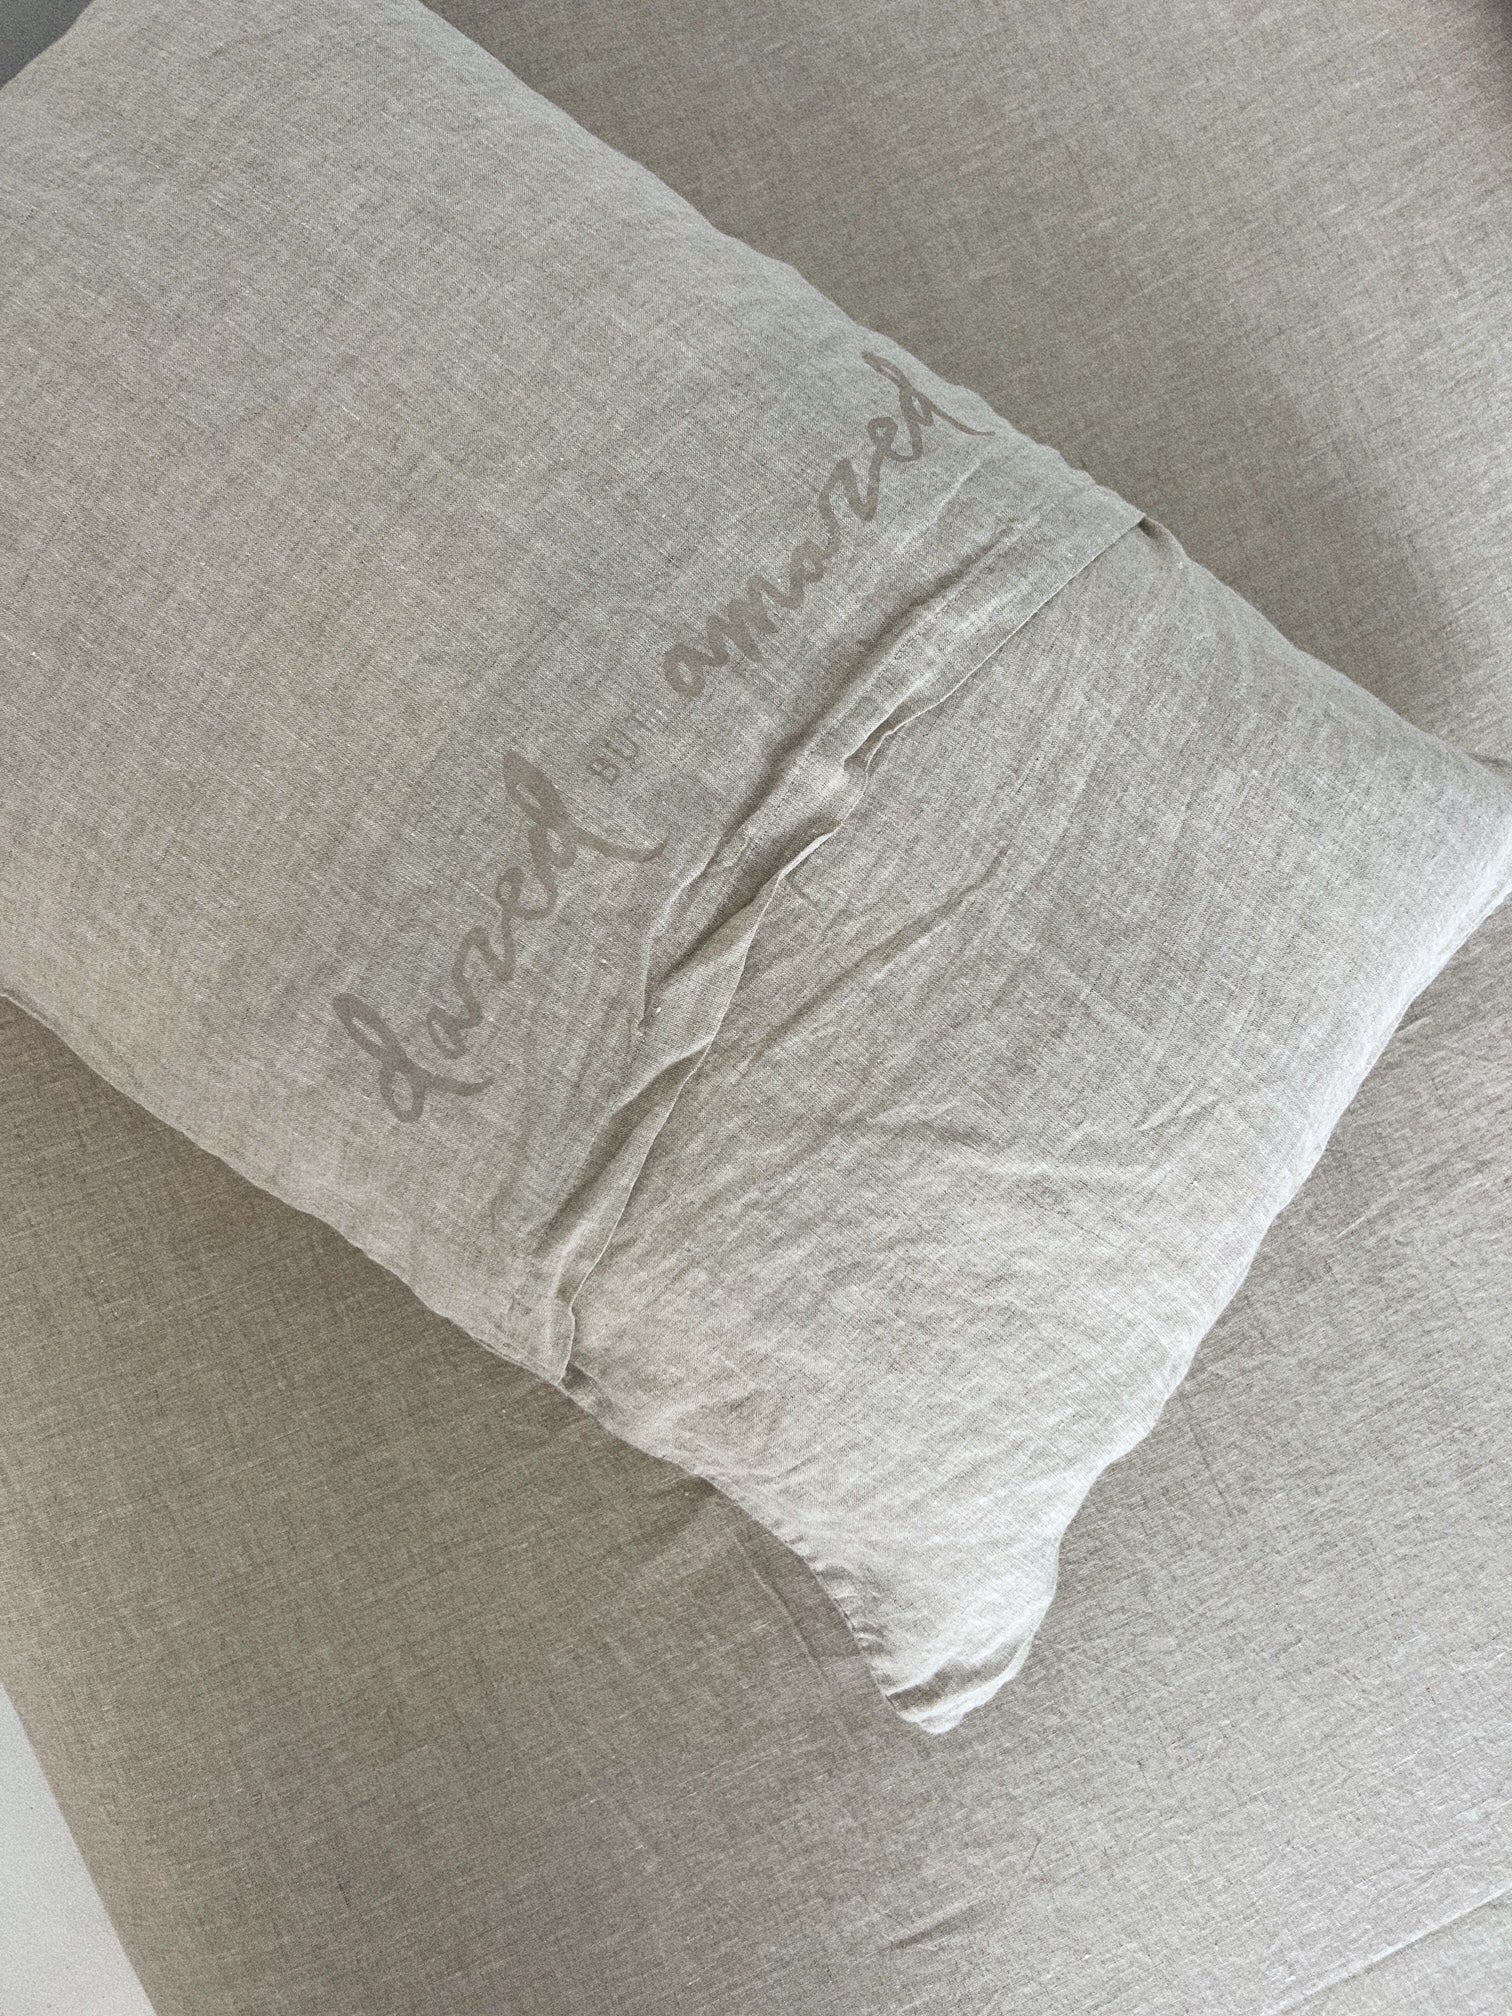 pillowslip set . natural linen